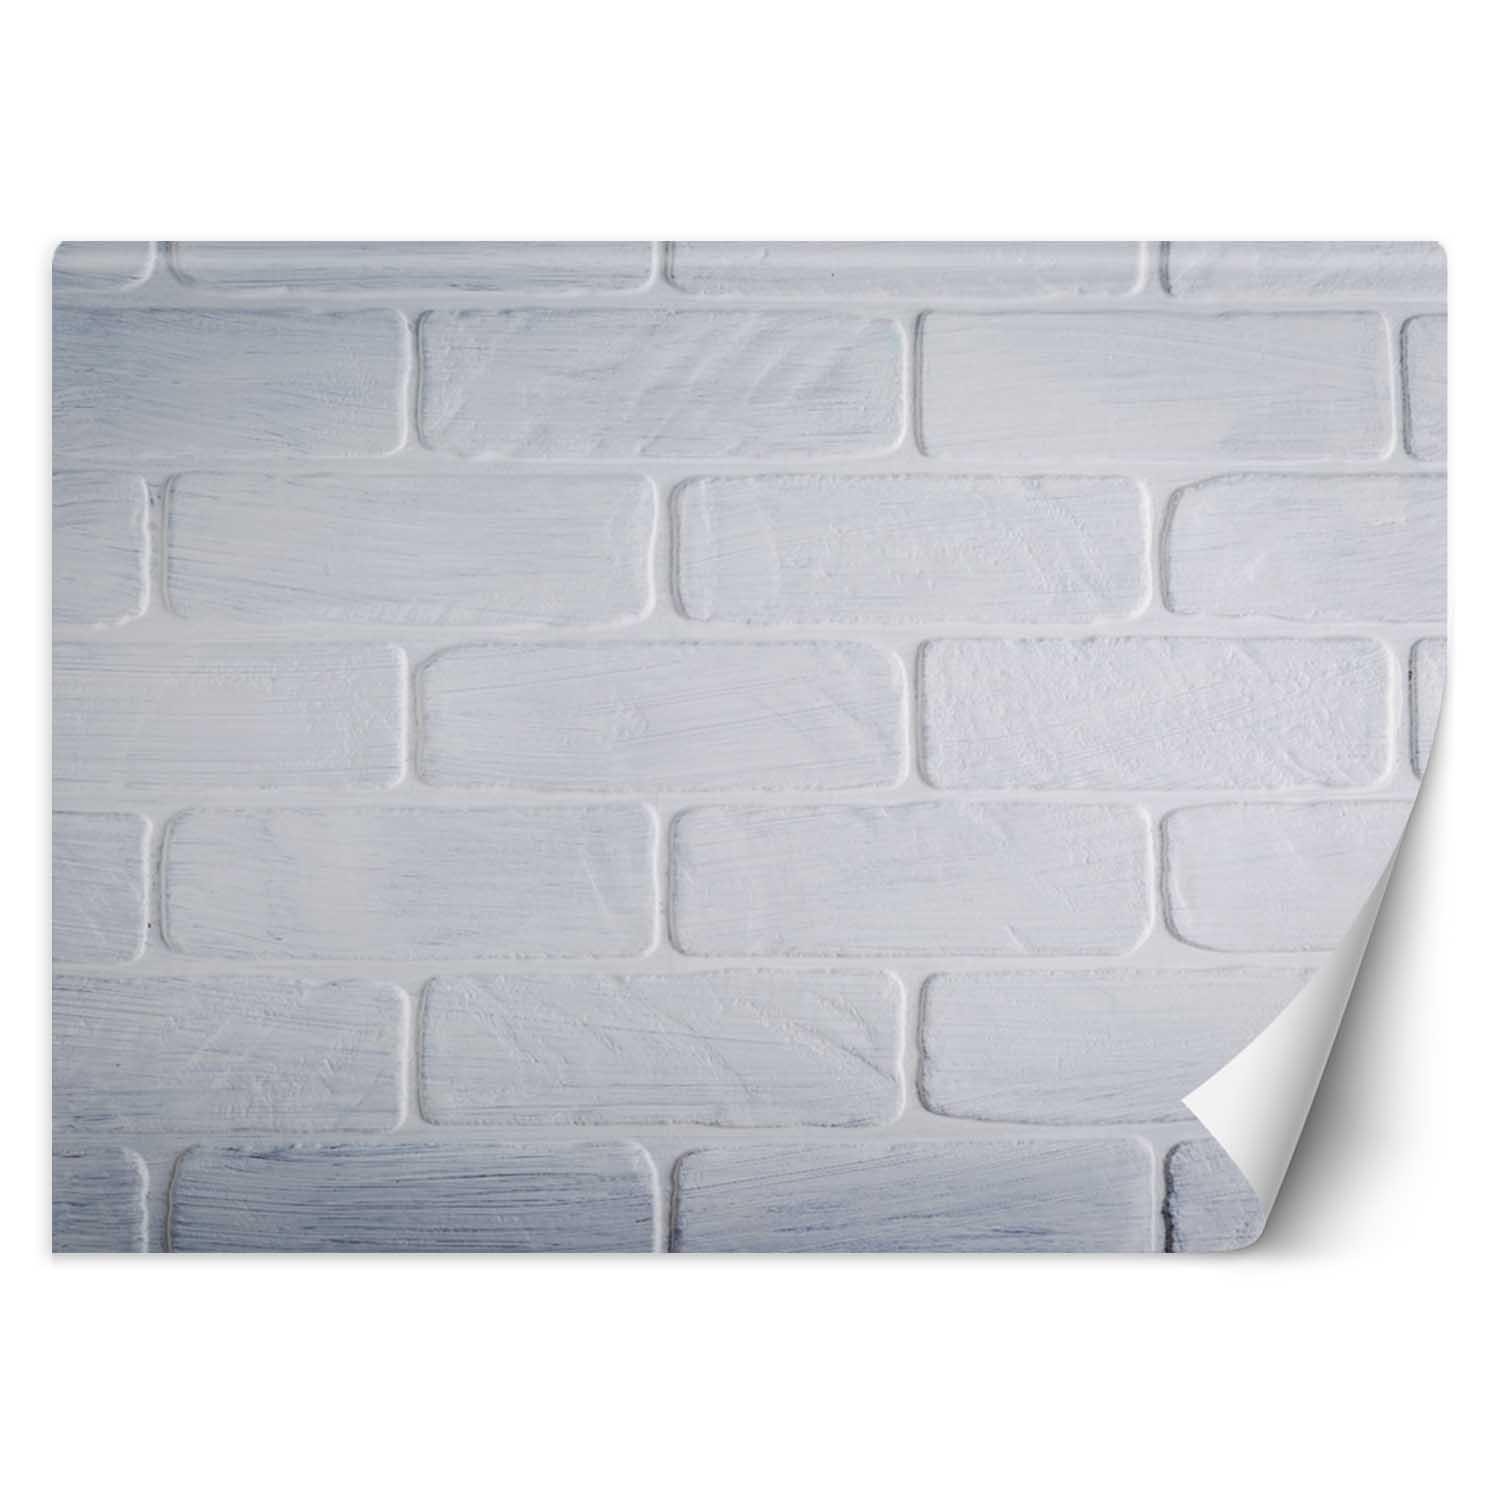 Trend24 – Behang – Witte Bakstenen Muur – Vliesbehang – Behang Woonkamer – Fotobehang – 400x280x2 cm – Incl. behanglijm